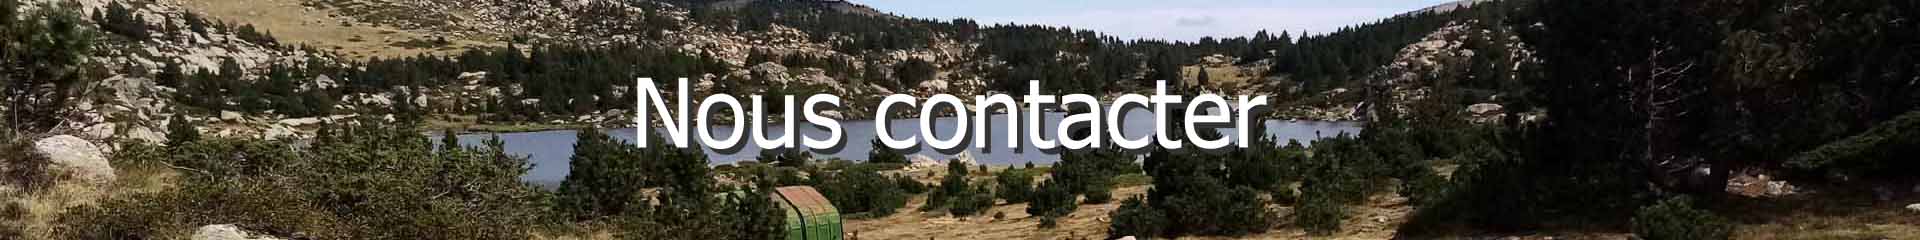 Un des nombreux lacs de Cerdagne dans le massif du Carlit (2921m), Pyrénées-Orientales, France | Cliquer pour agrandir